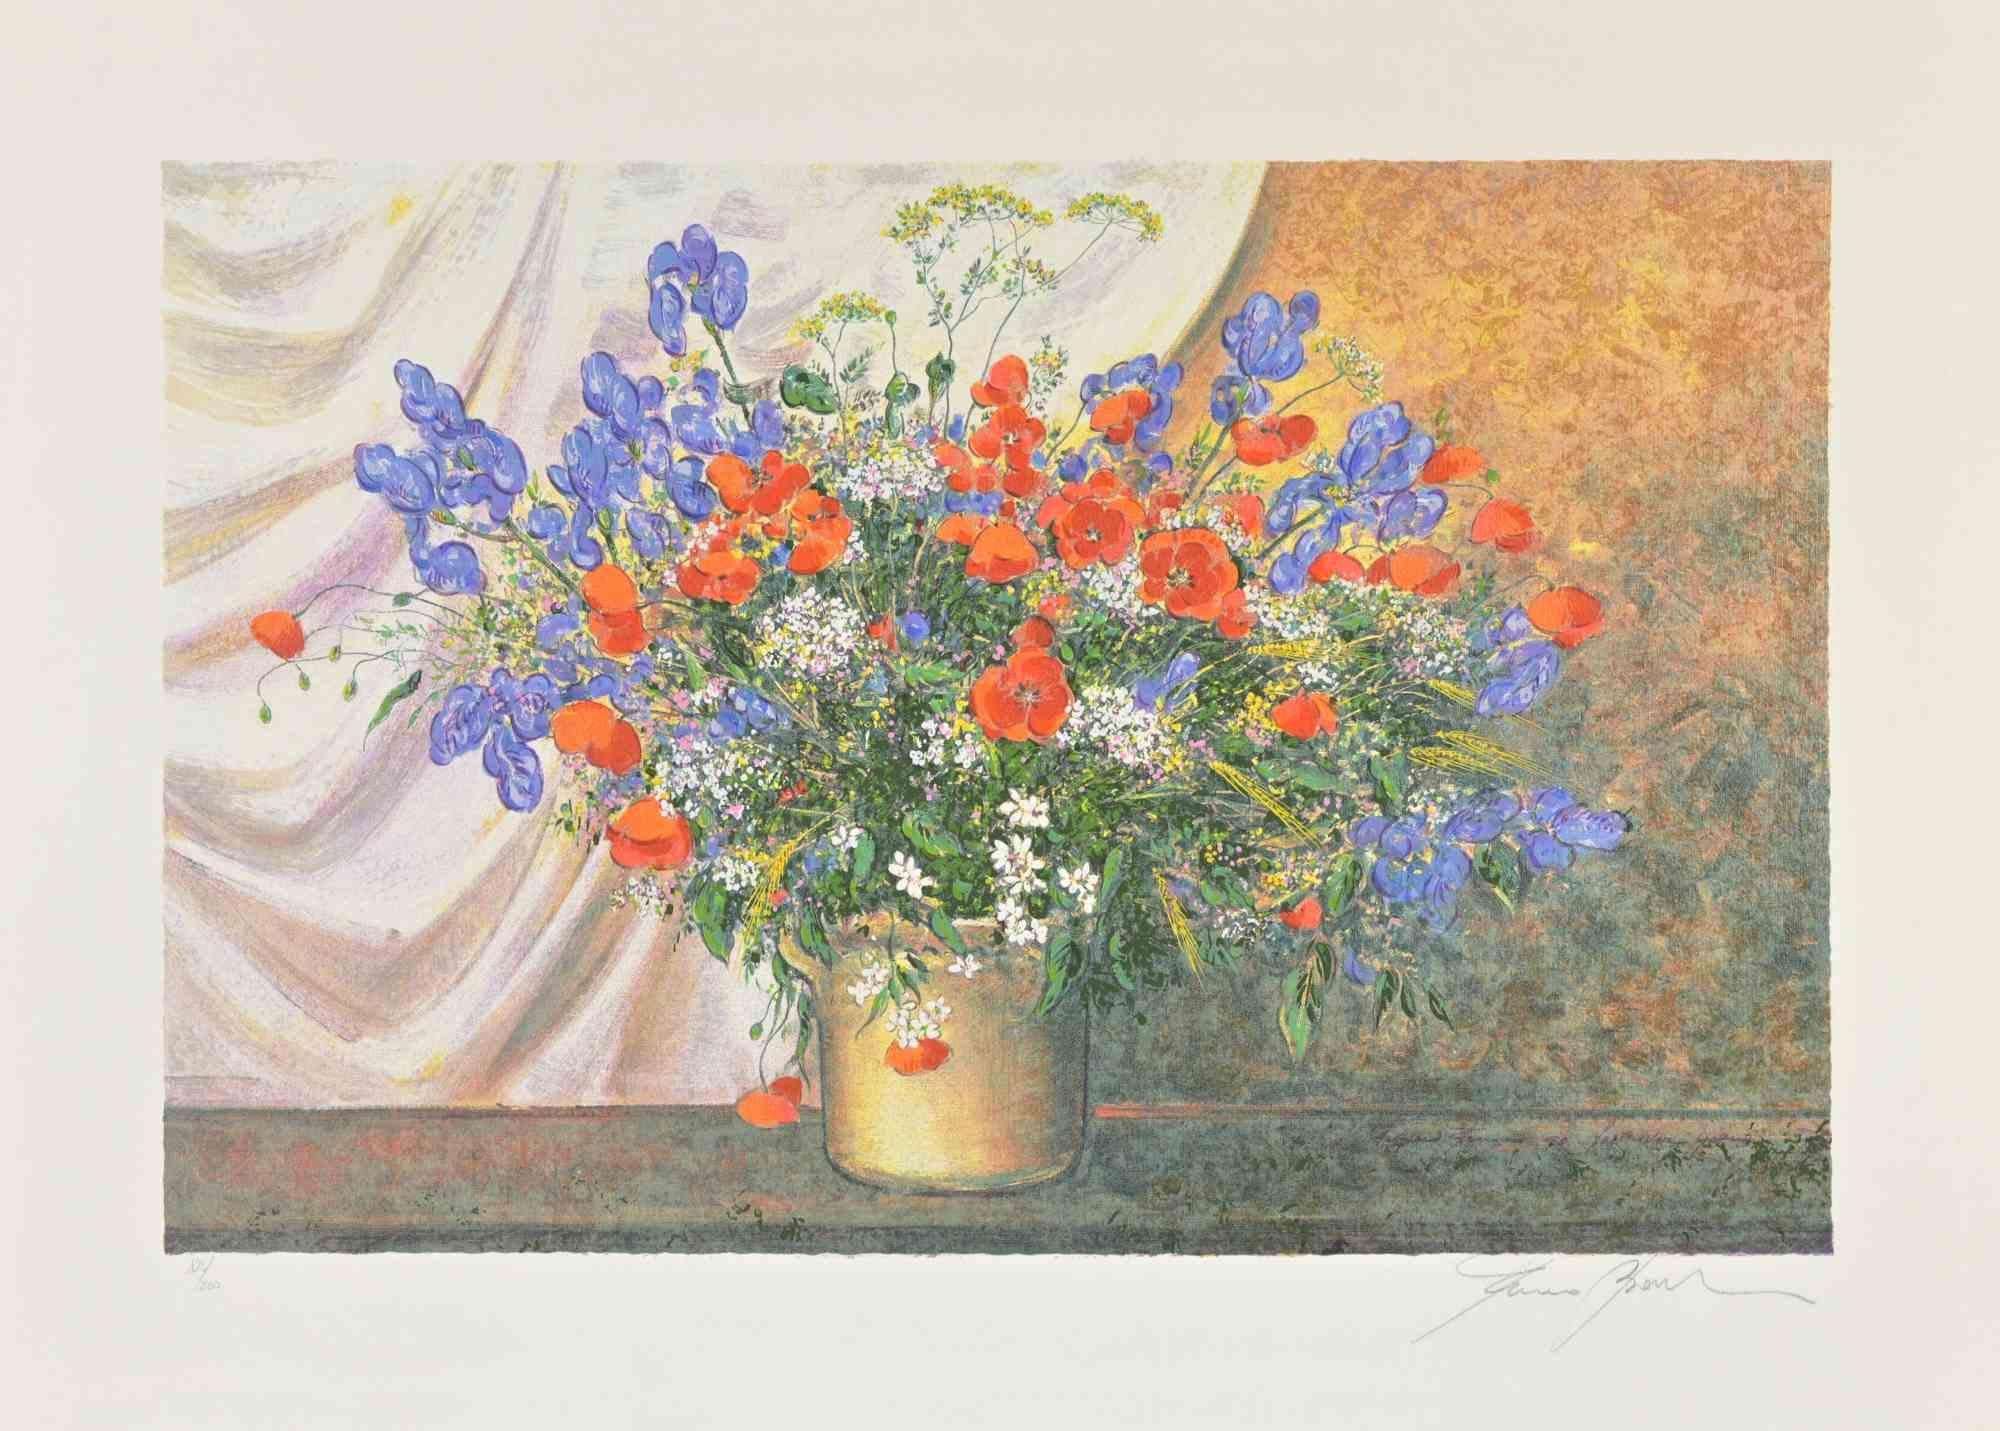 Wildflowers ist ein modernes Kunstwerk von Franco Bocchi aus den 1980er Jahren.

Gemischter farbiger Siebdruck.

Handsigniert am unteren Rand.

 Am linken unteren Rand nummeriert, ex. 128/200.

Gute Bedingungen.

Franco Bocchi wurde am 25. November